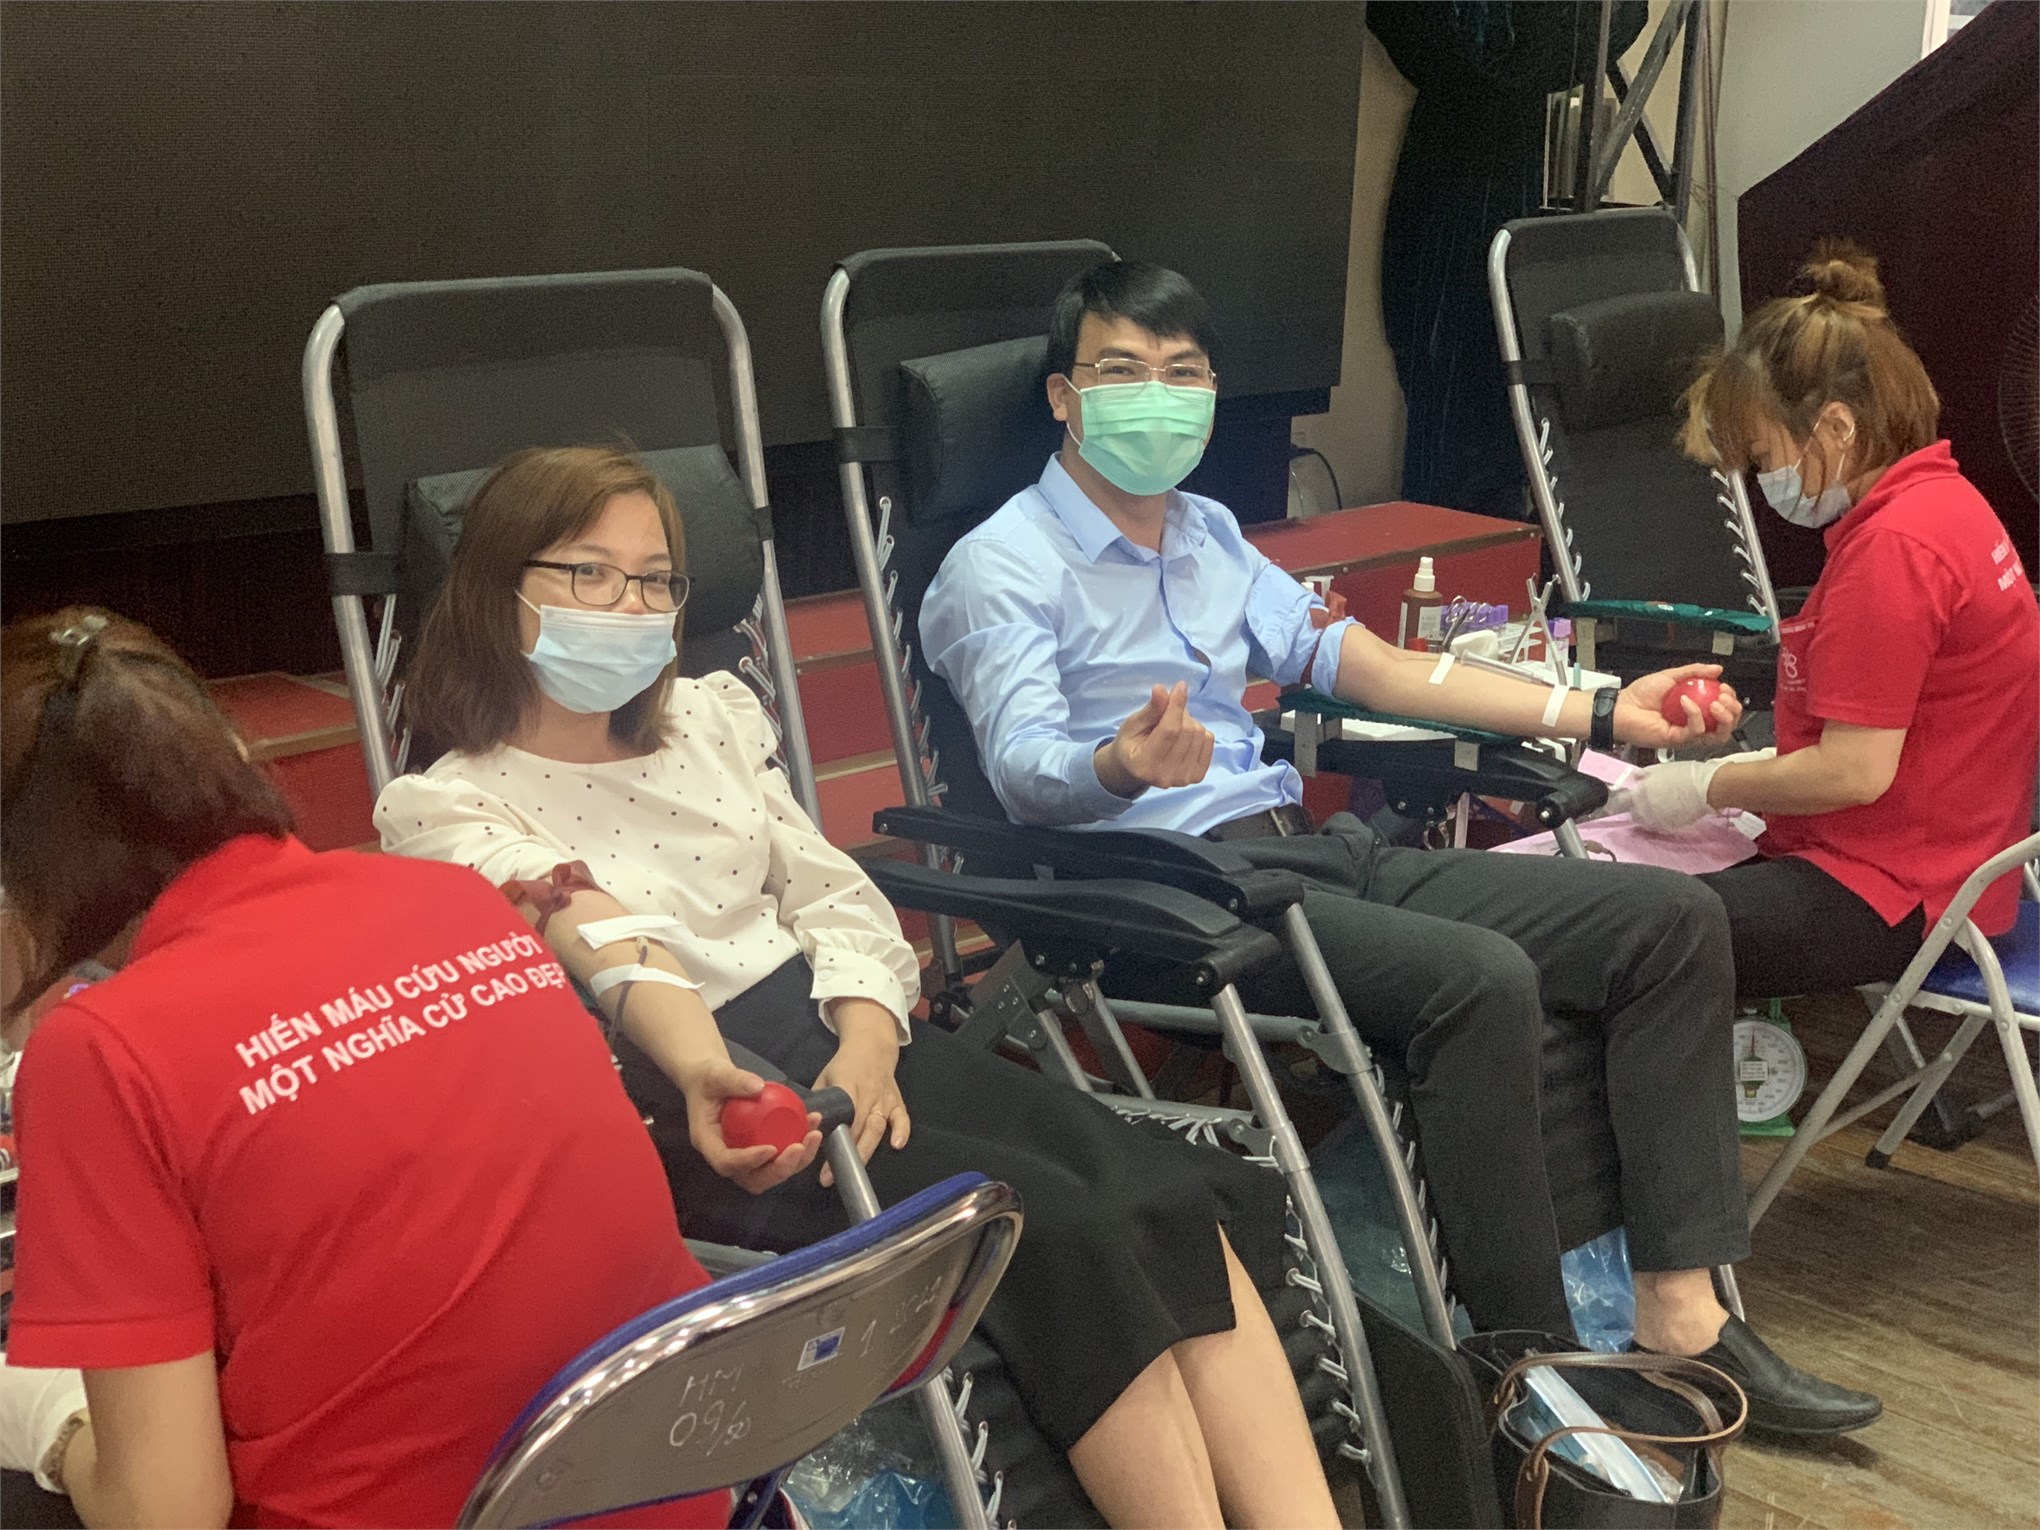 Tuổi trẻ Trường Đại học Công nghiệp Hà Nội hiến tặng 1439 đơn vị máu tại Ngày hội Cầu vồng nhân ái 2021